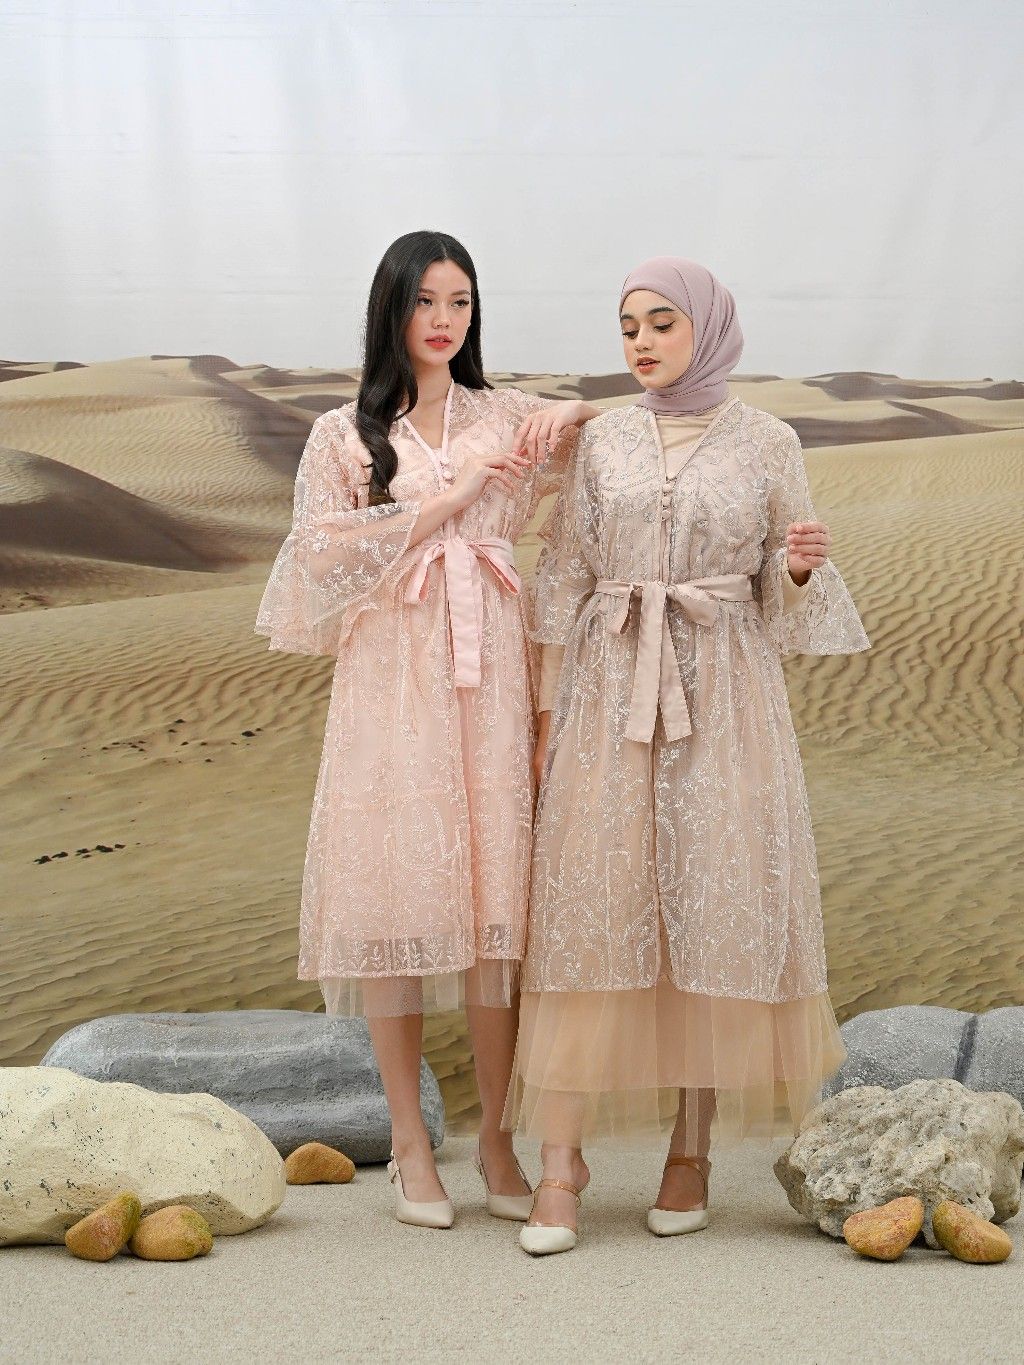 Rekomendasi baju lebaran warna pink satin - Rhei Collection - Nadine Dress.